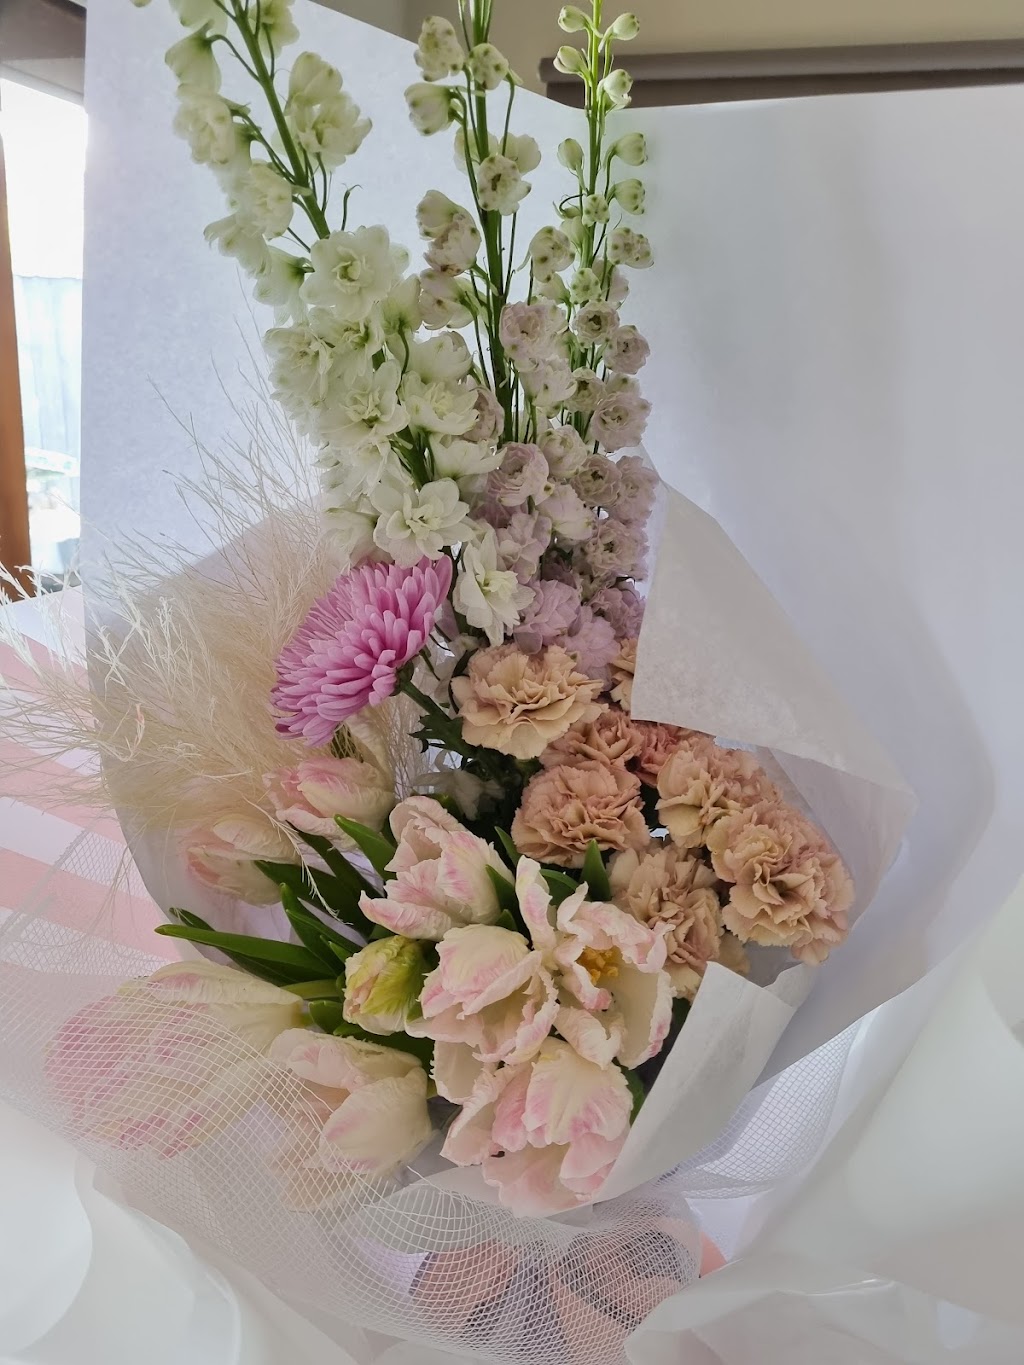 Leda Lee Bespoke Flowers based in Heathmont | 21 Skyline Pl, Heathmont VIC 3135, Australia | Phone: 0478 144 770